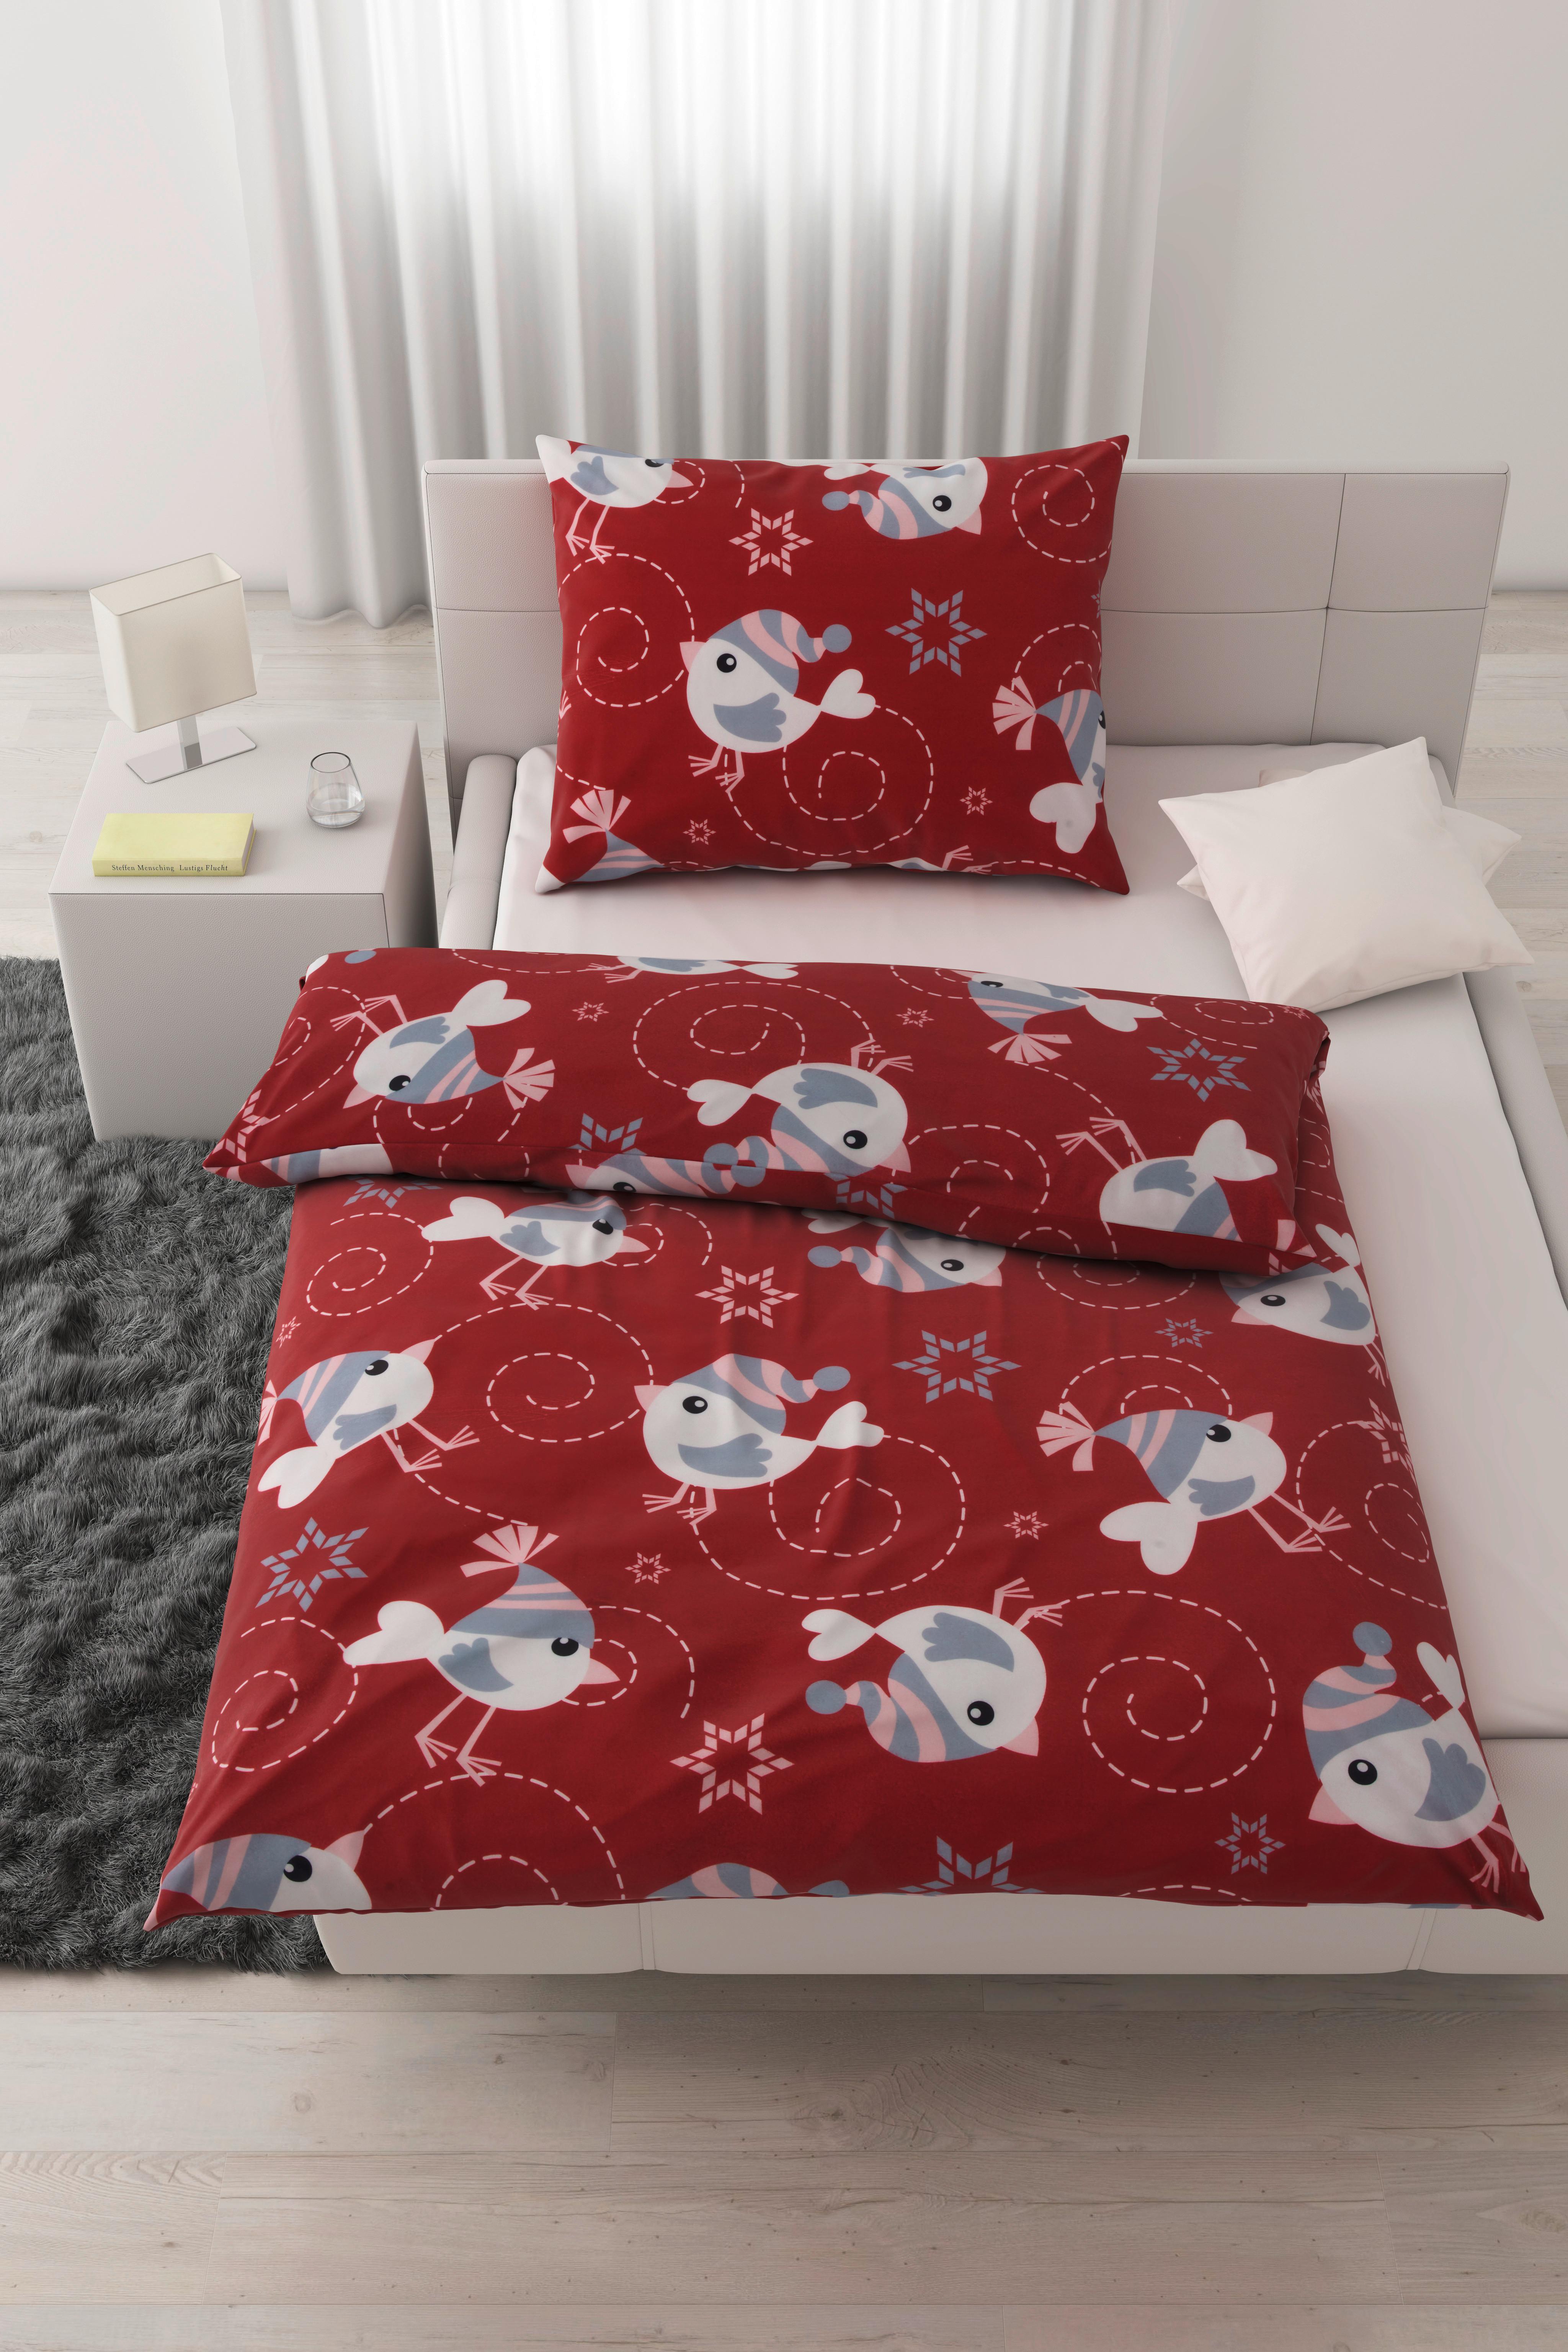 Lenjerie de pat Piepmatz - roșu, Konventionell, textil (140/200cm) - Modern Living